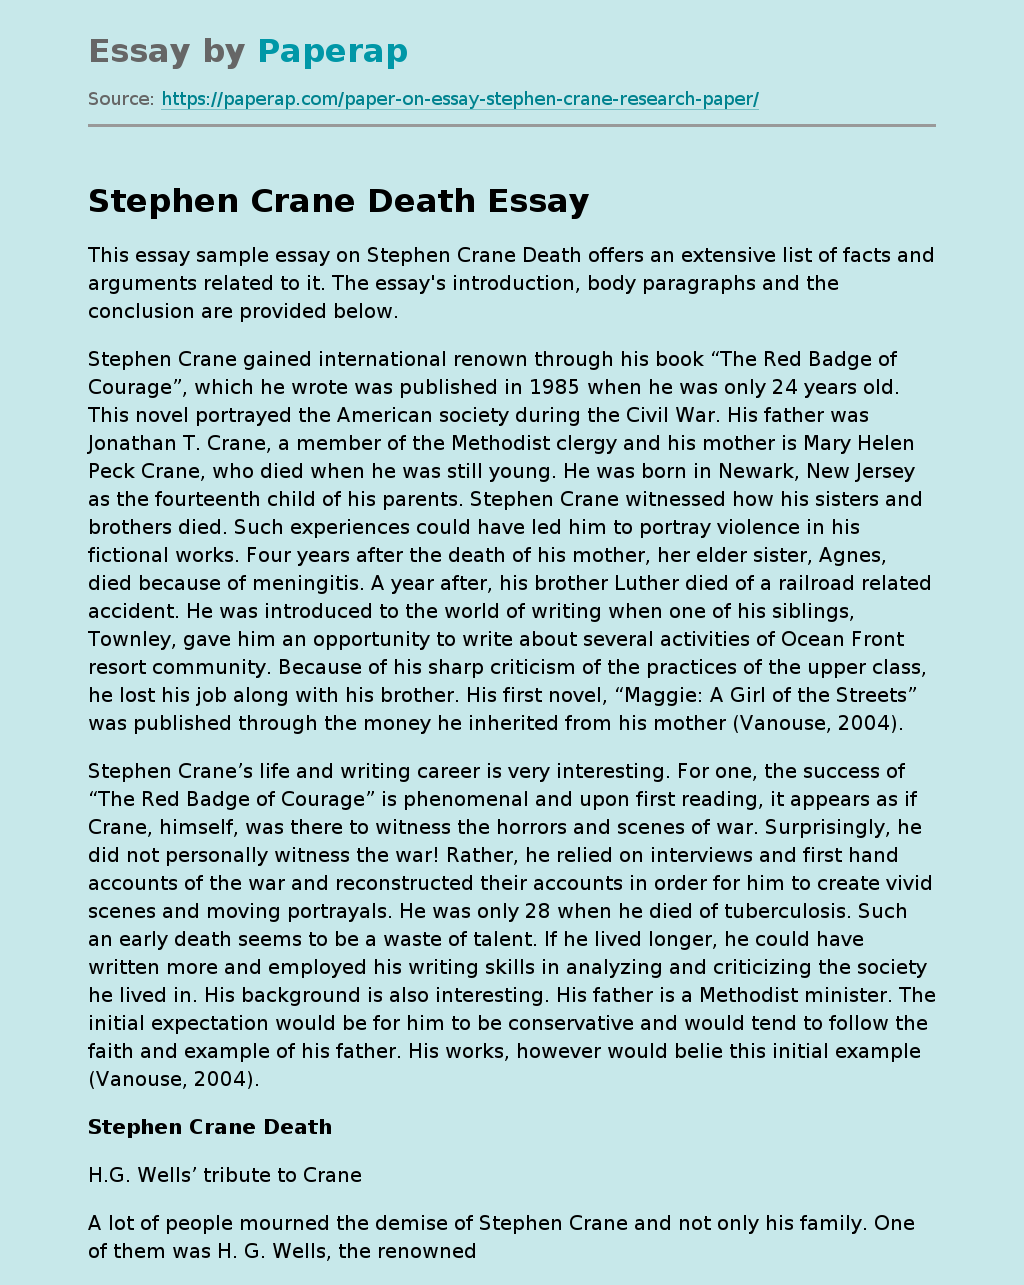 Stephen Crane Death